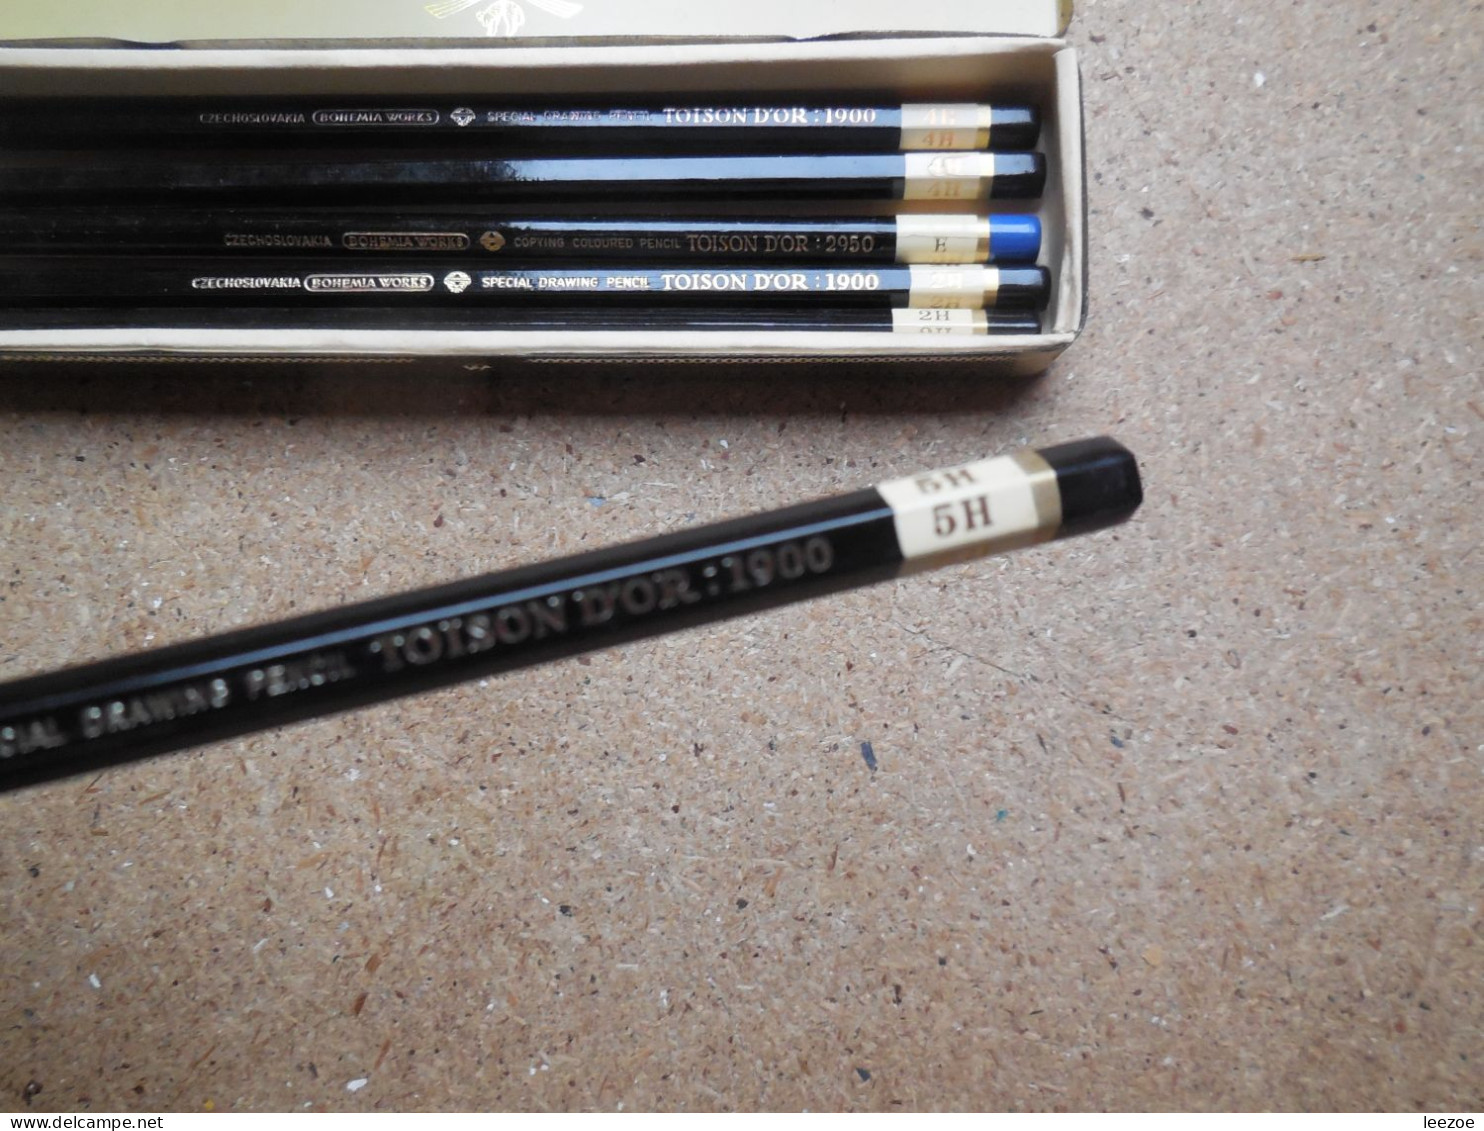 Boite de crayons TOISON D'OR, 1 en carton et 1 en métal, crayons H9. 2H. 4H. 5H. ET E................N5